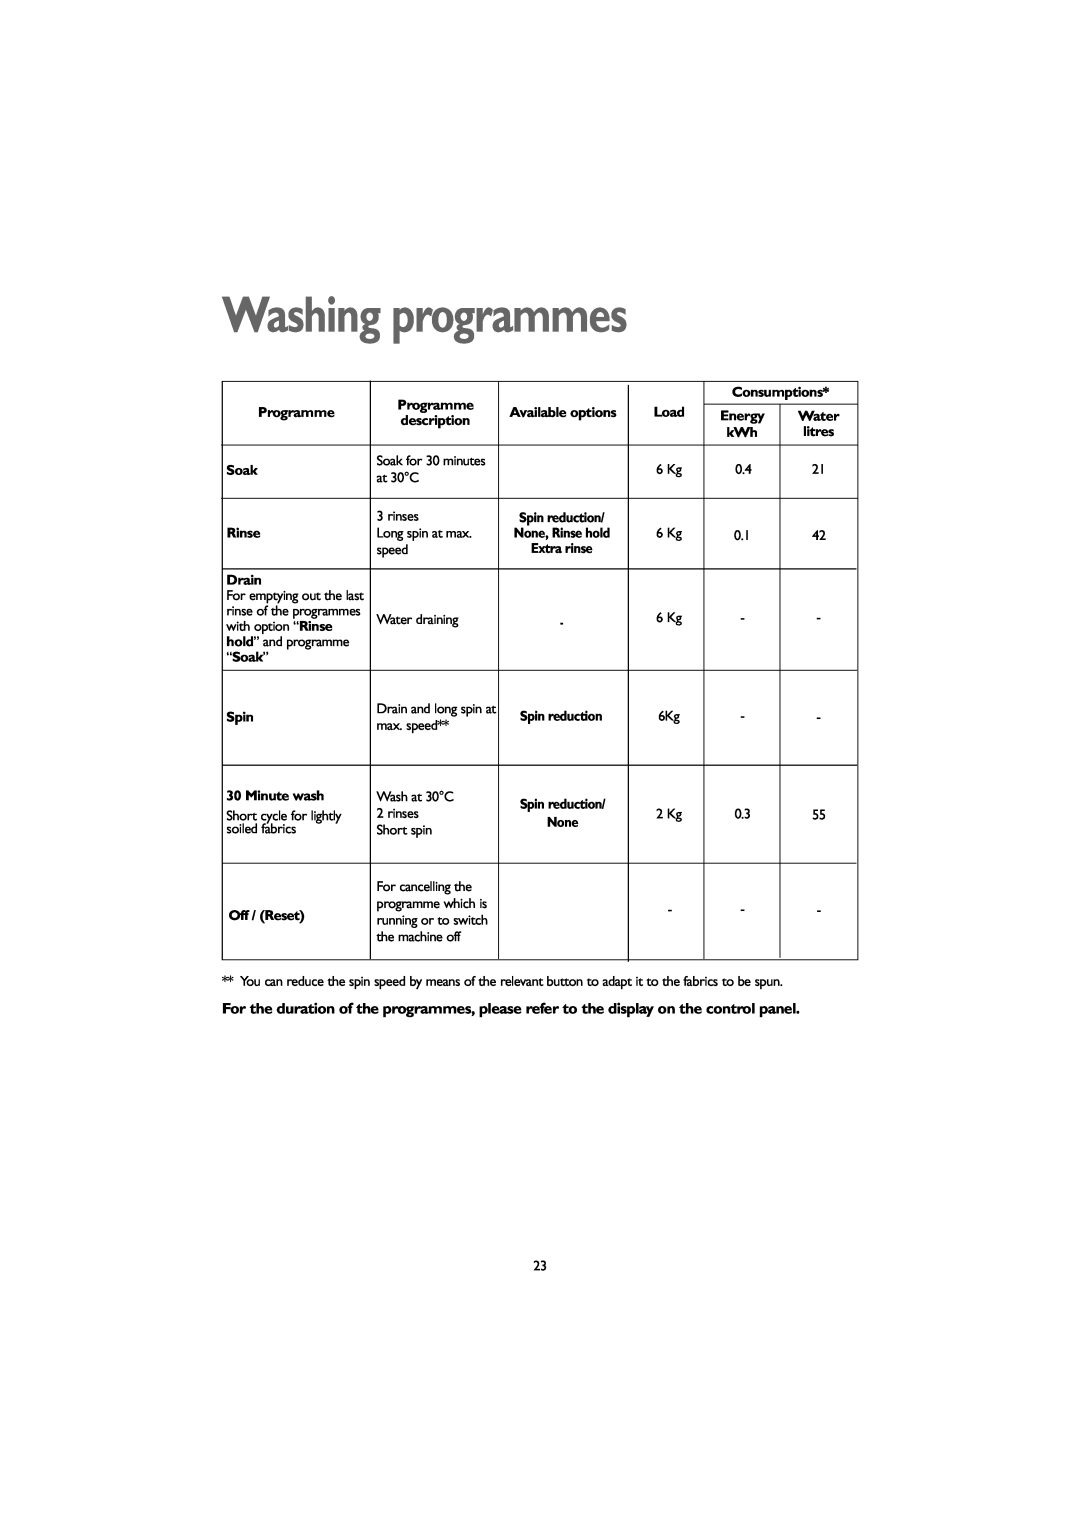 John Lewis JLWM 1203 instruction manual Washing programmes, at 30C 